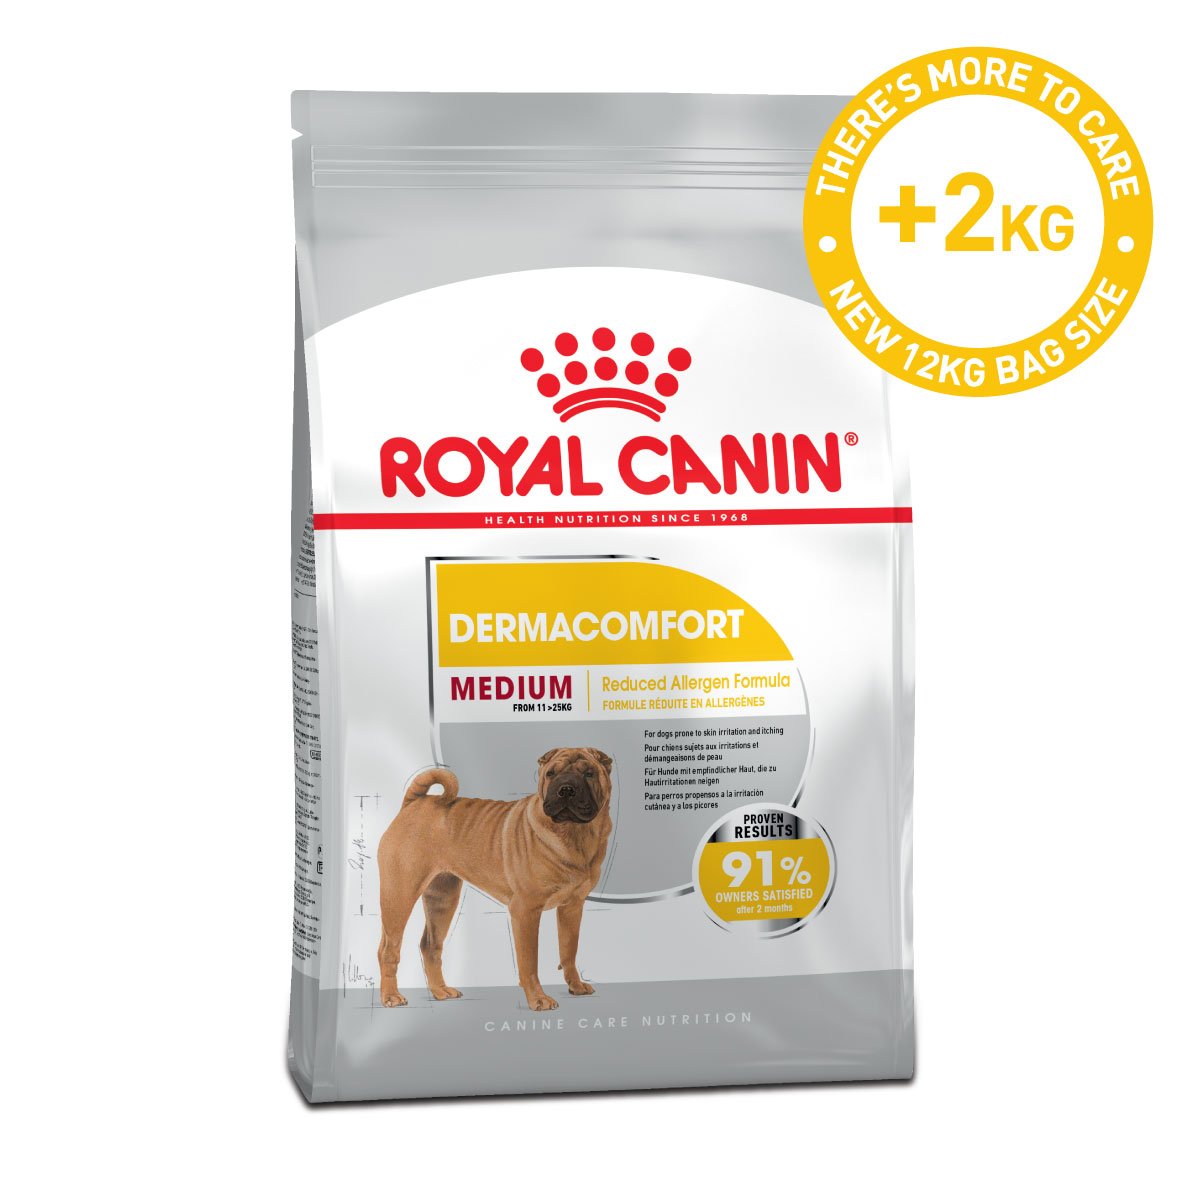 ROYAL CANIN DERMACOMFORT MEDIUM Trockenfutter für mittelgroße Hunde mit empfindlicher Haut 12kg von Royal Canin